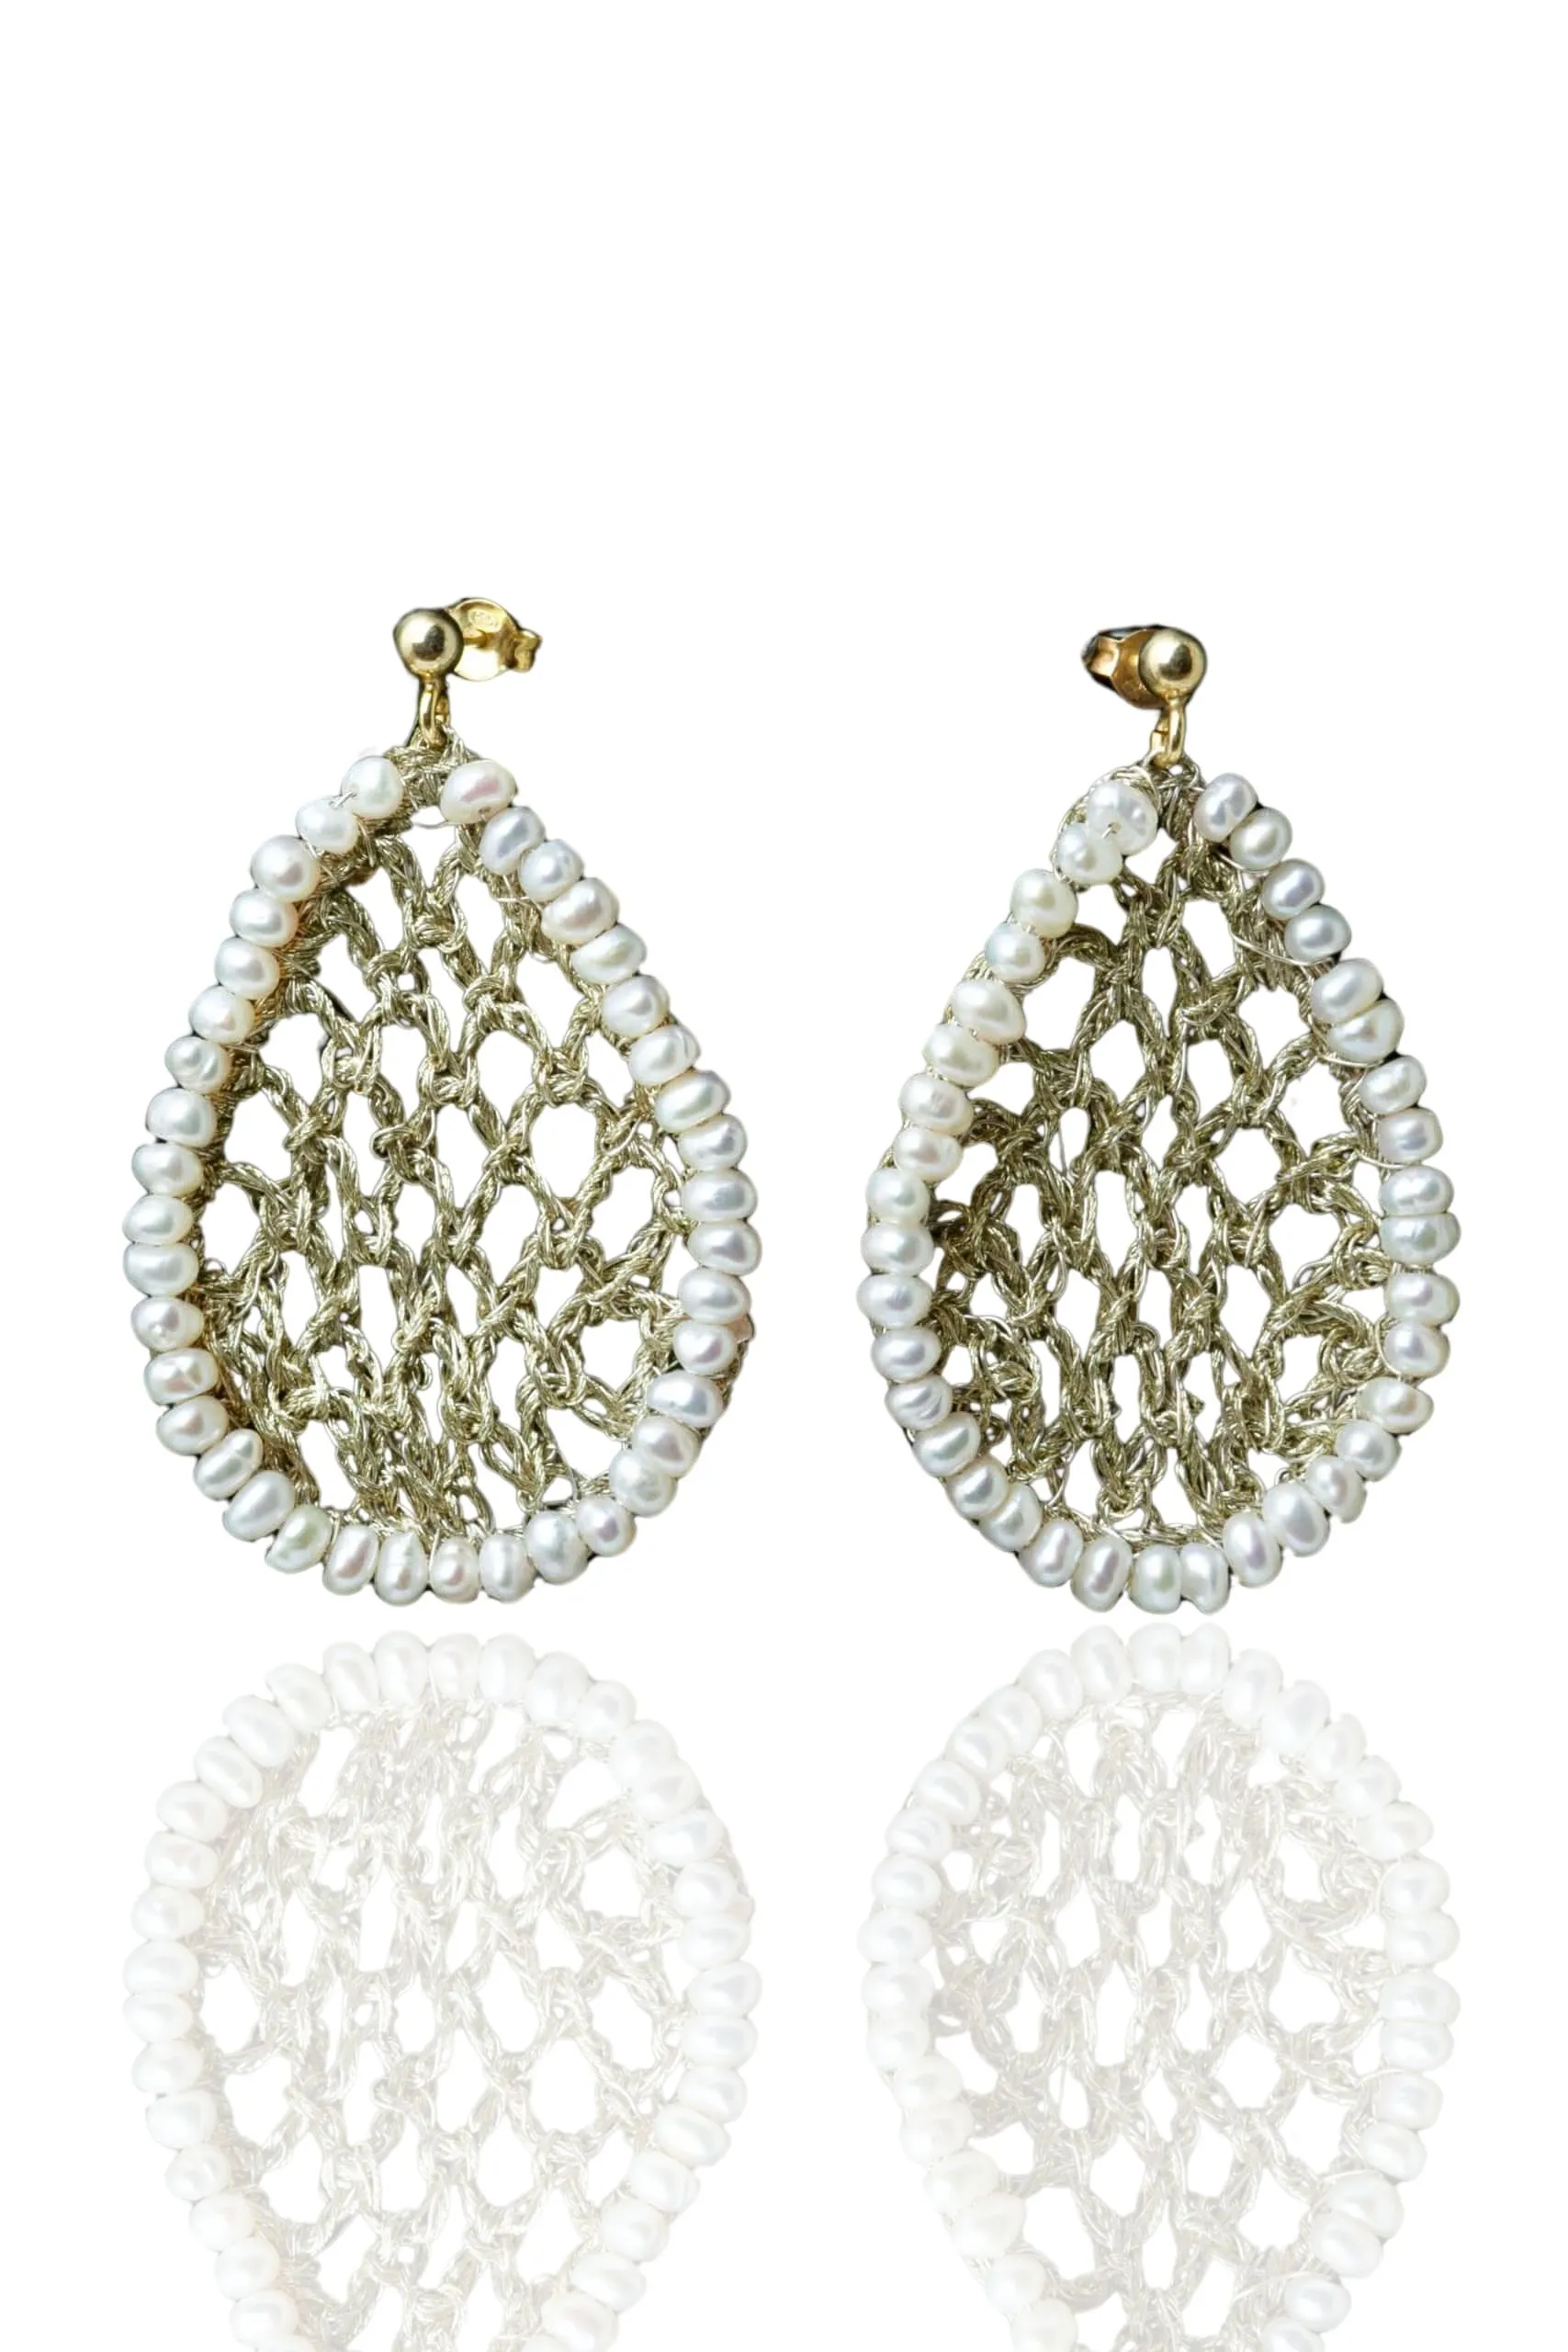 Handmade Jewellery | Teardrop crochet knit silver earrings with pearls main